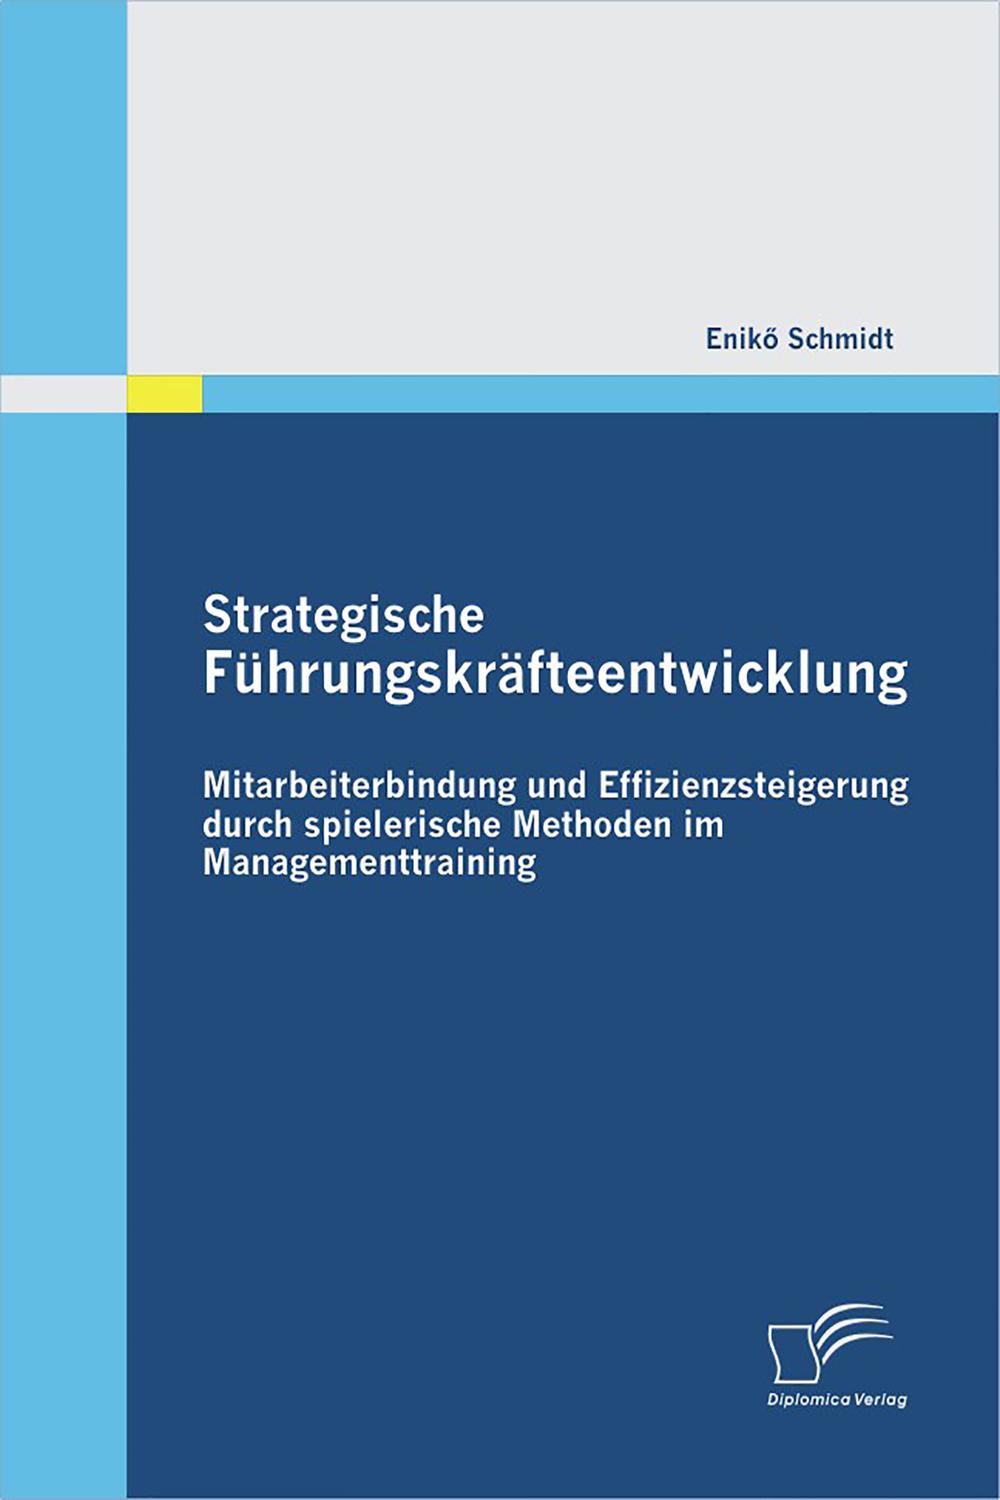 Strategische Führungskräfteentwicklung: Mitarbeiterbindung und Effizienzsteigerung durch spielerische Methoden im Managementtraining - Enikö Schmidt